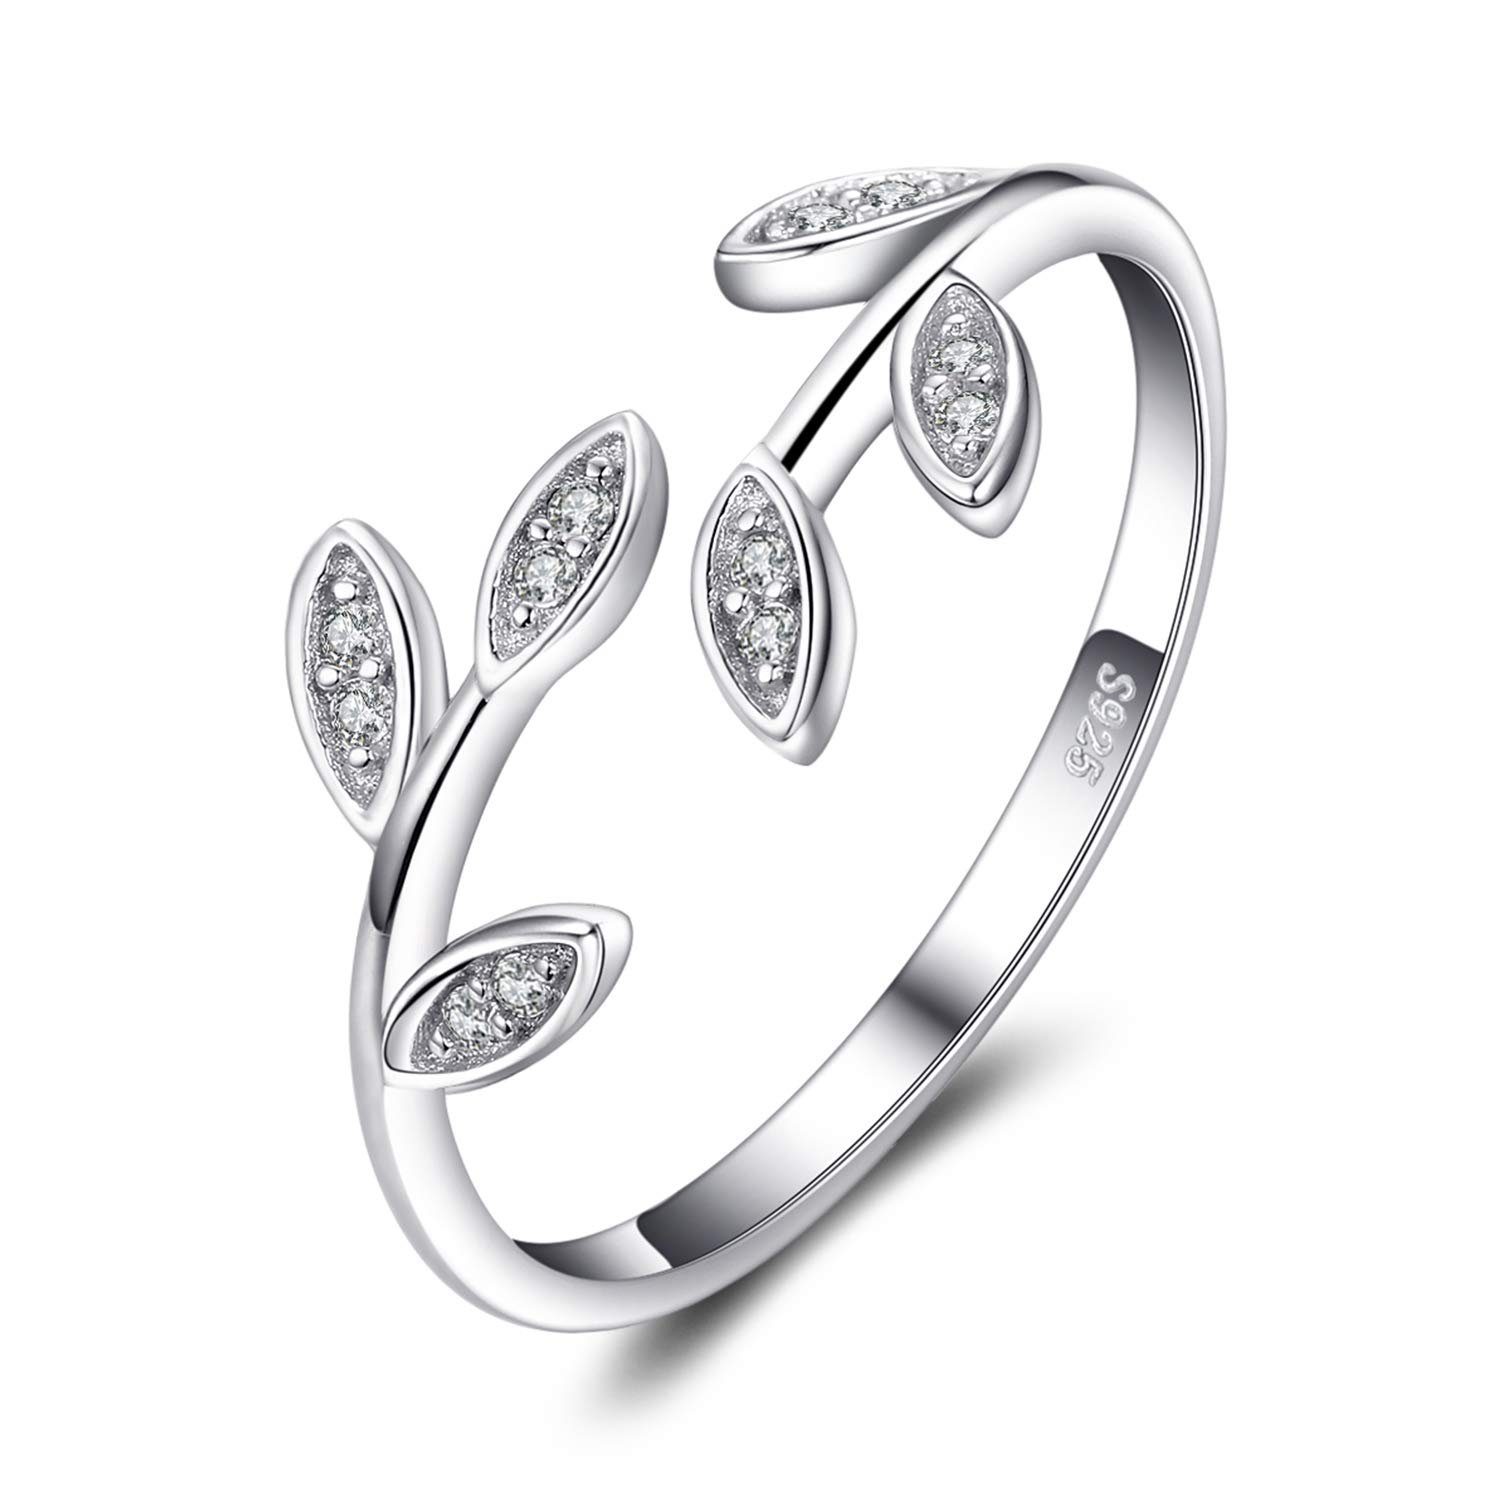 Frauen 925er Sterling Silber Silberschmuck Olivenzweig Sterlingsilber POCHUMIDUU S925 Fingerring für aus Frauen Ring,